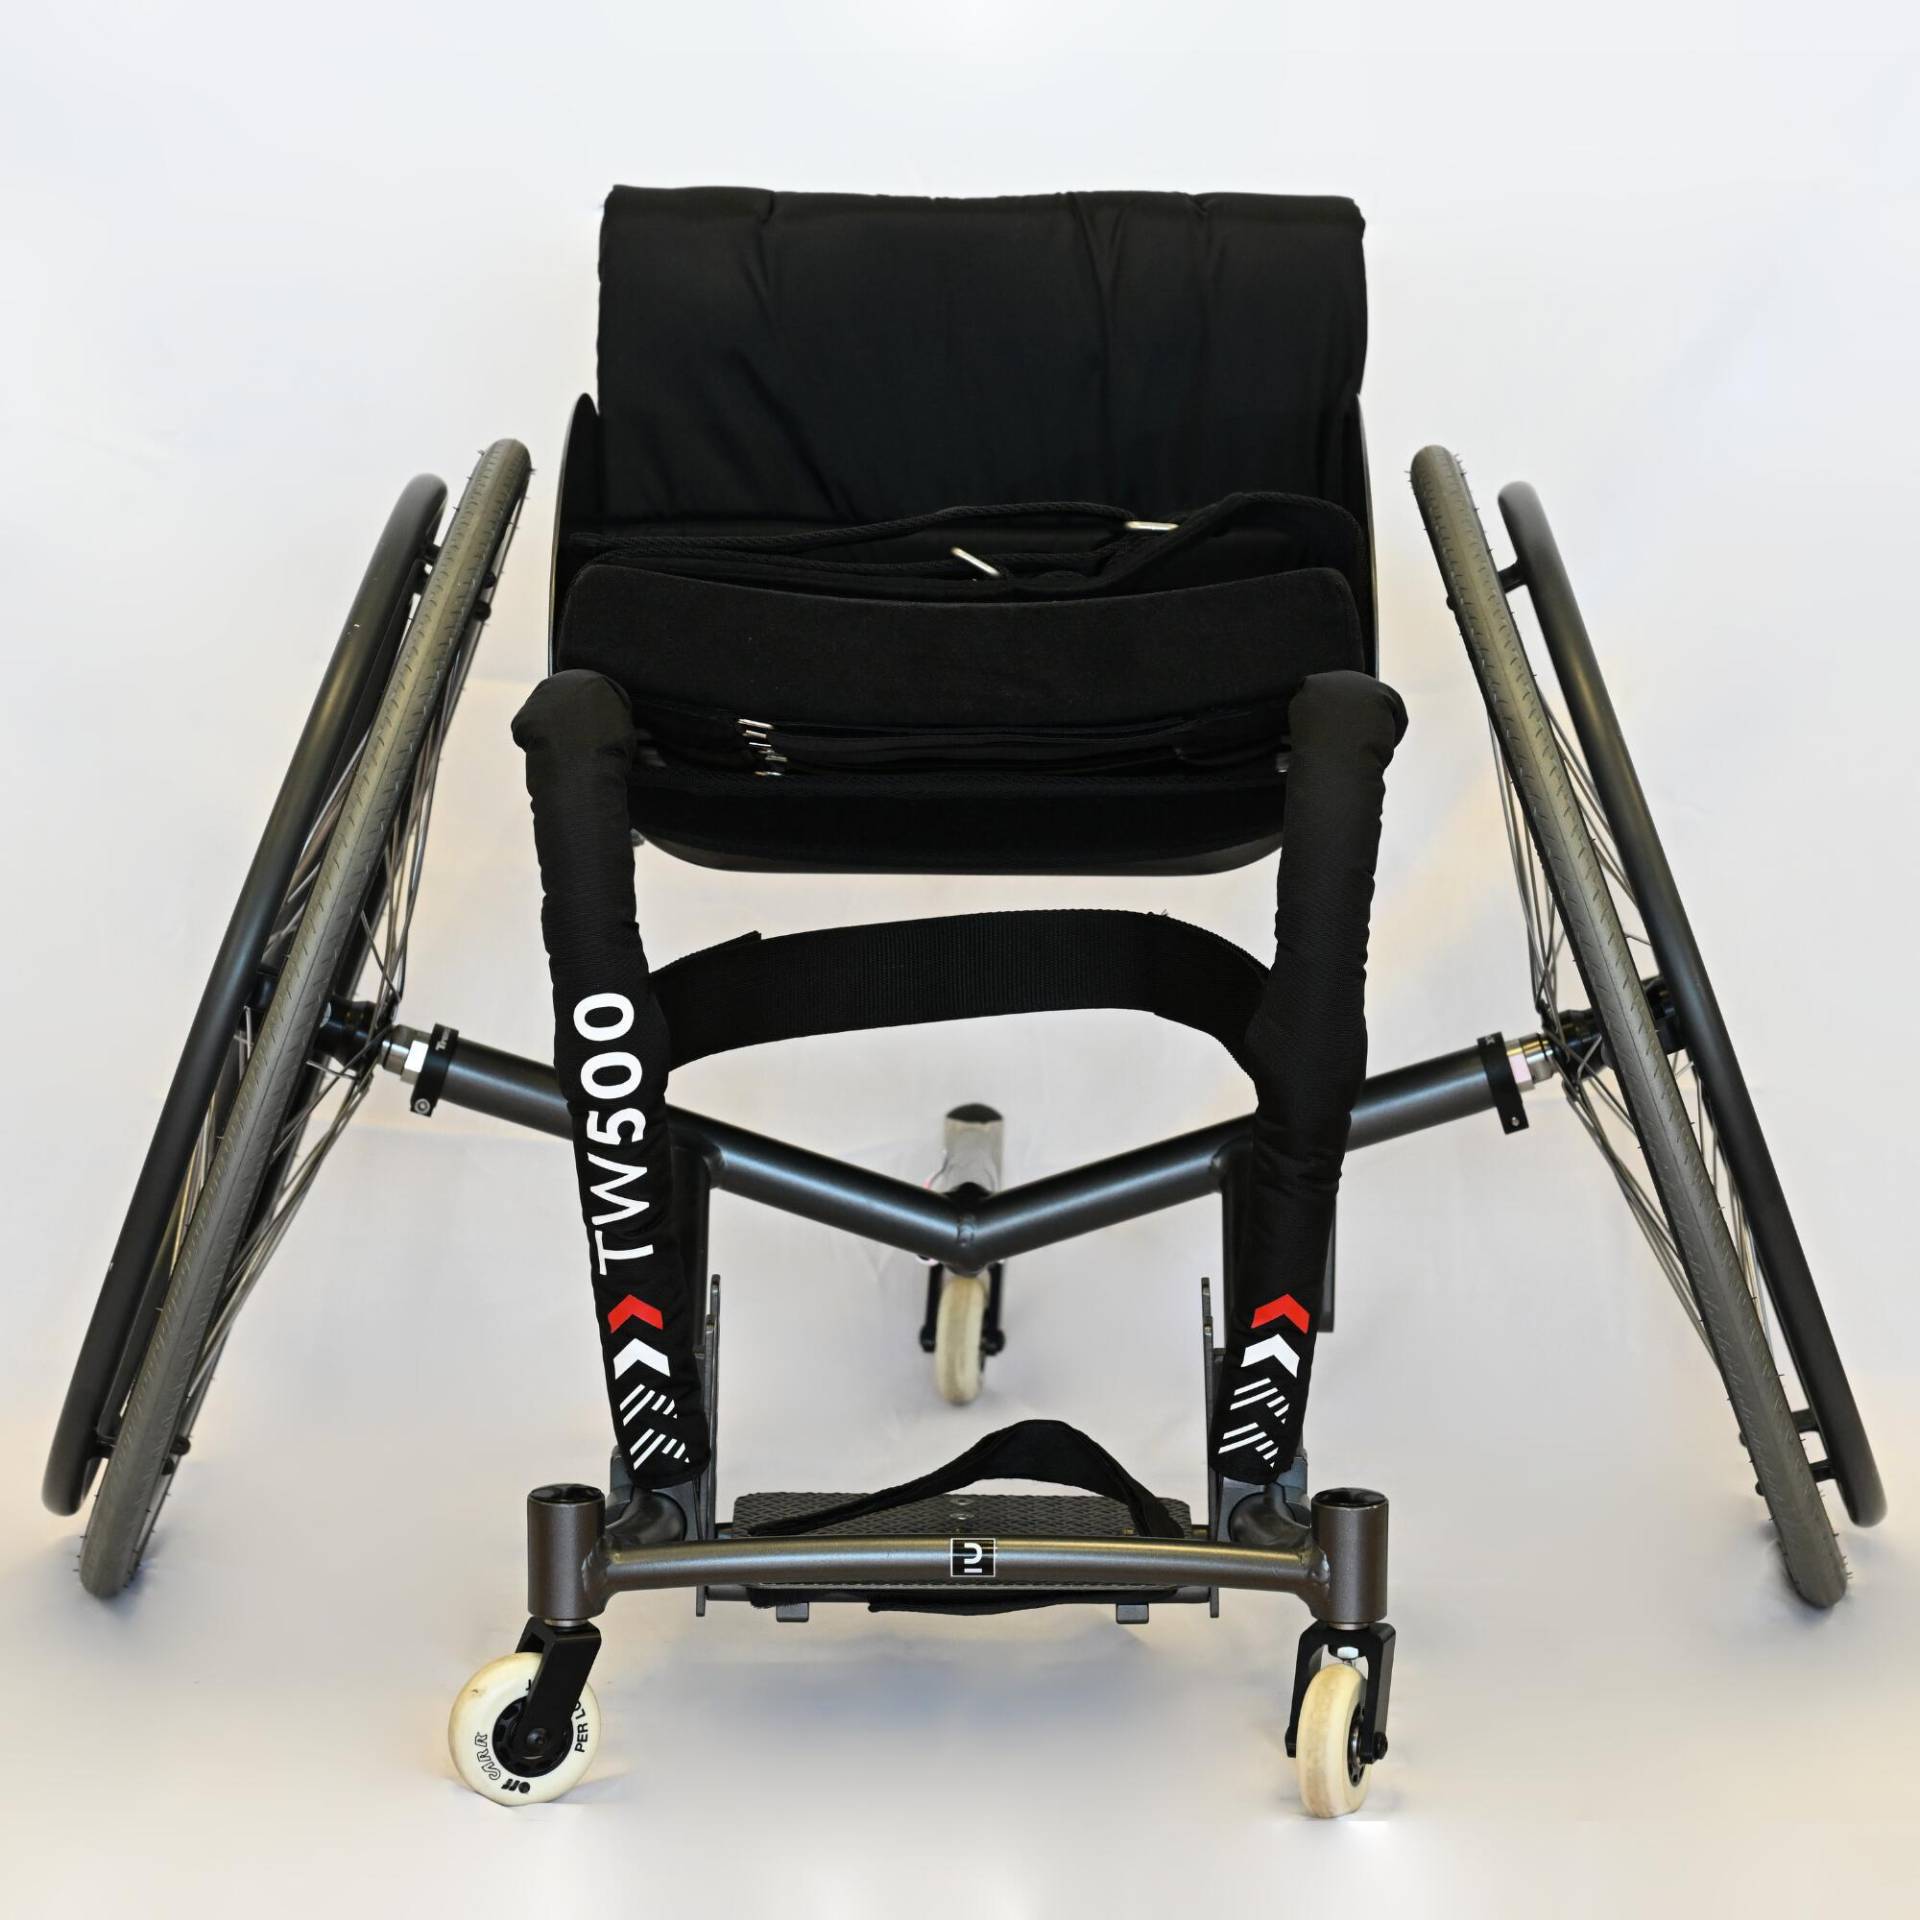 Rollstuhl Tennis/Racketsport verstellbar - TW500 von Decathlon